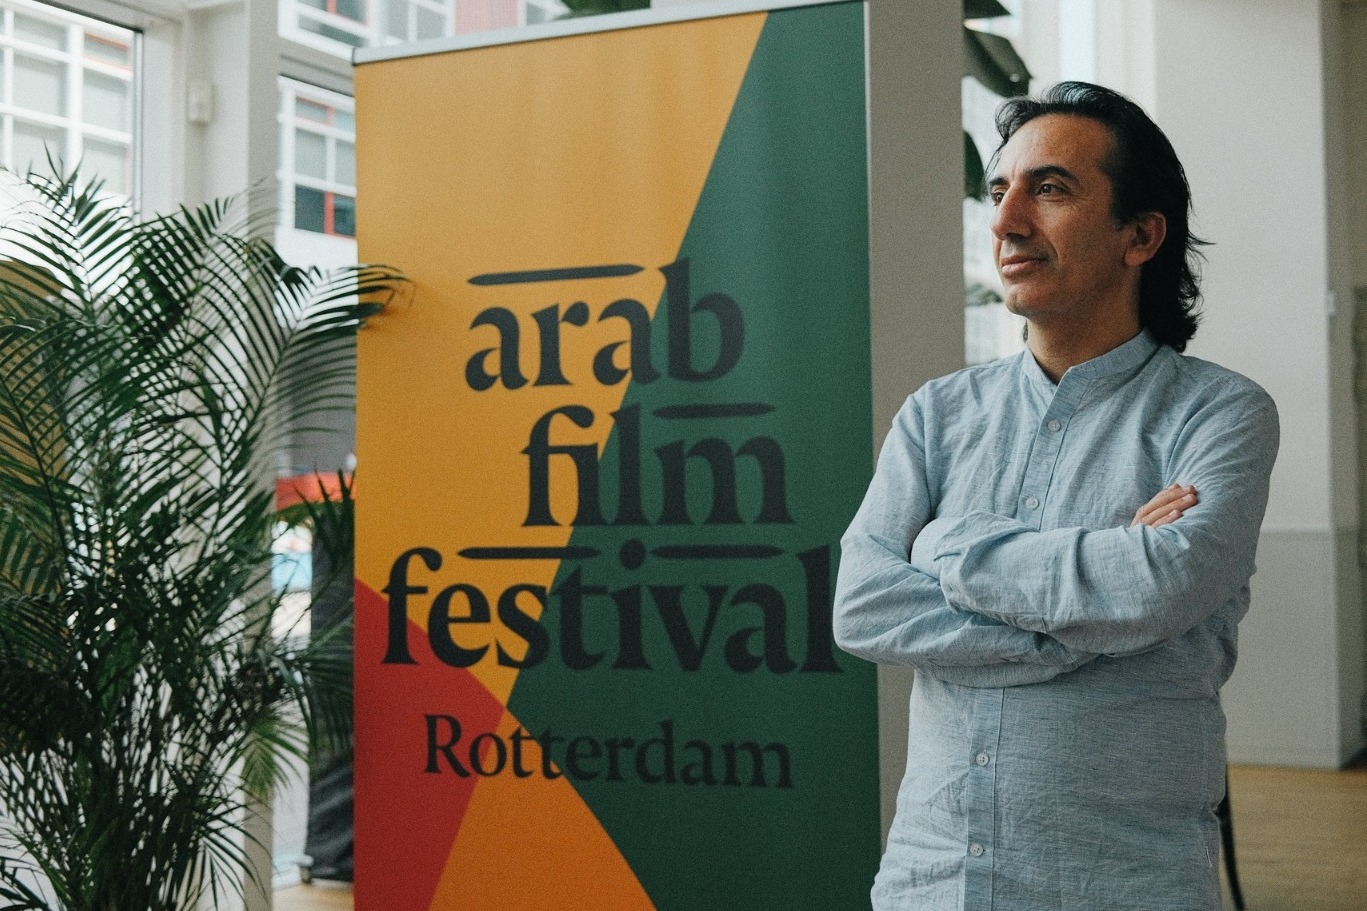 مهرجان الفيلم العربي بروتردام يعلن عن فعاليات أيام المرأة السينمائية